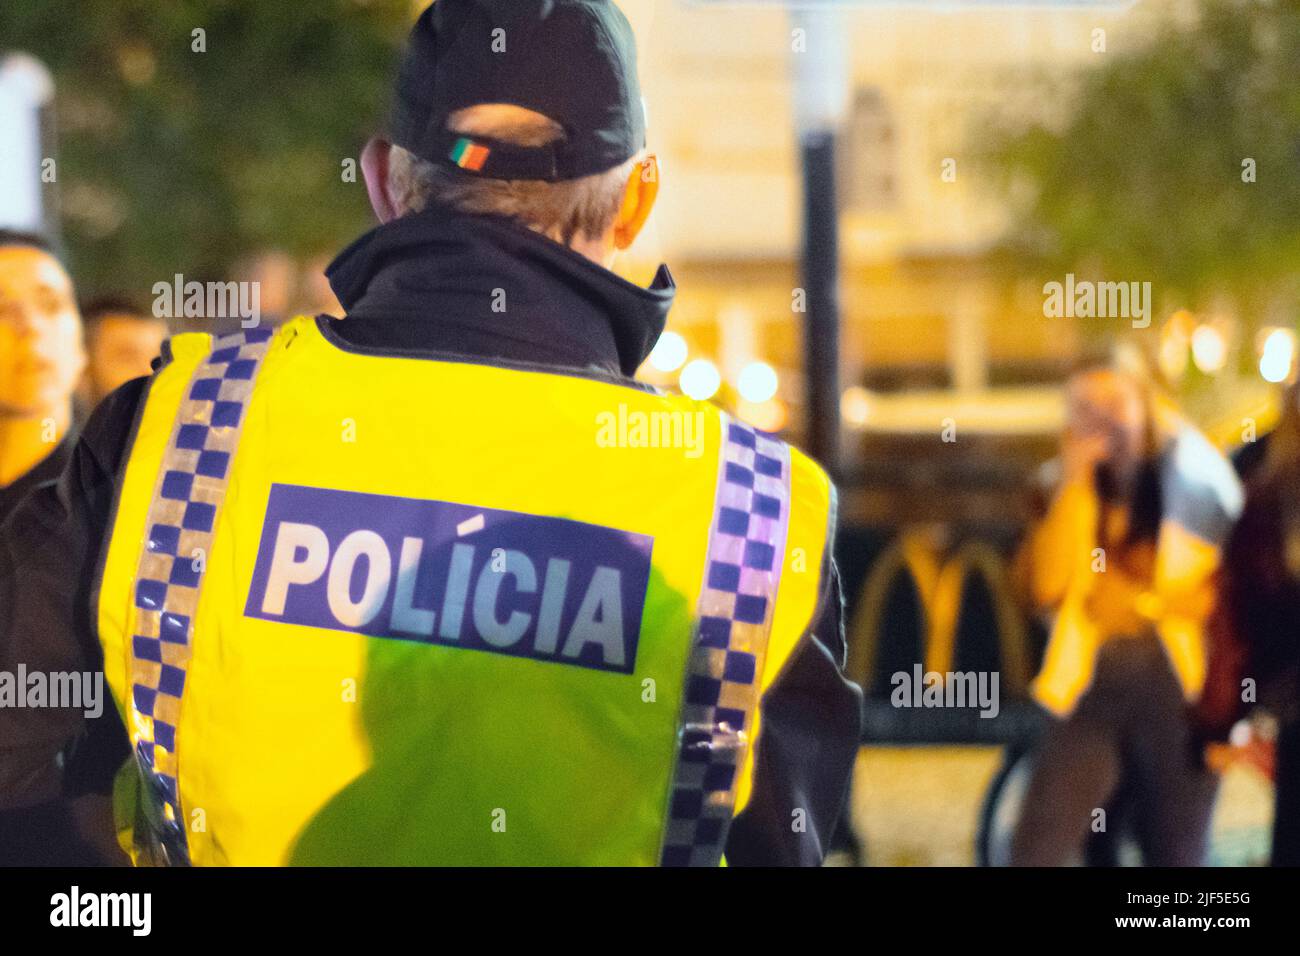 Polizia o polizia del Portogallo, autorità incaricate dell'applicazione della legge del Portogallo. Polícia o polizia, forze di polizia portoghesi. Pubblica sicurezza, PSP Portogallo. Foto Stock